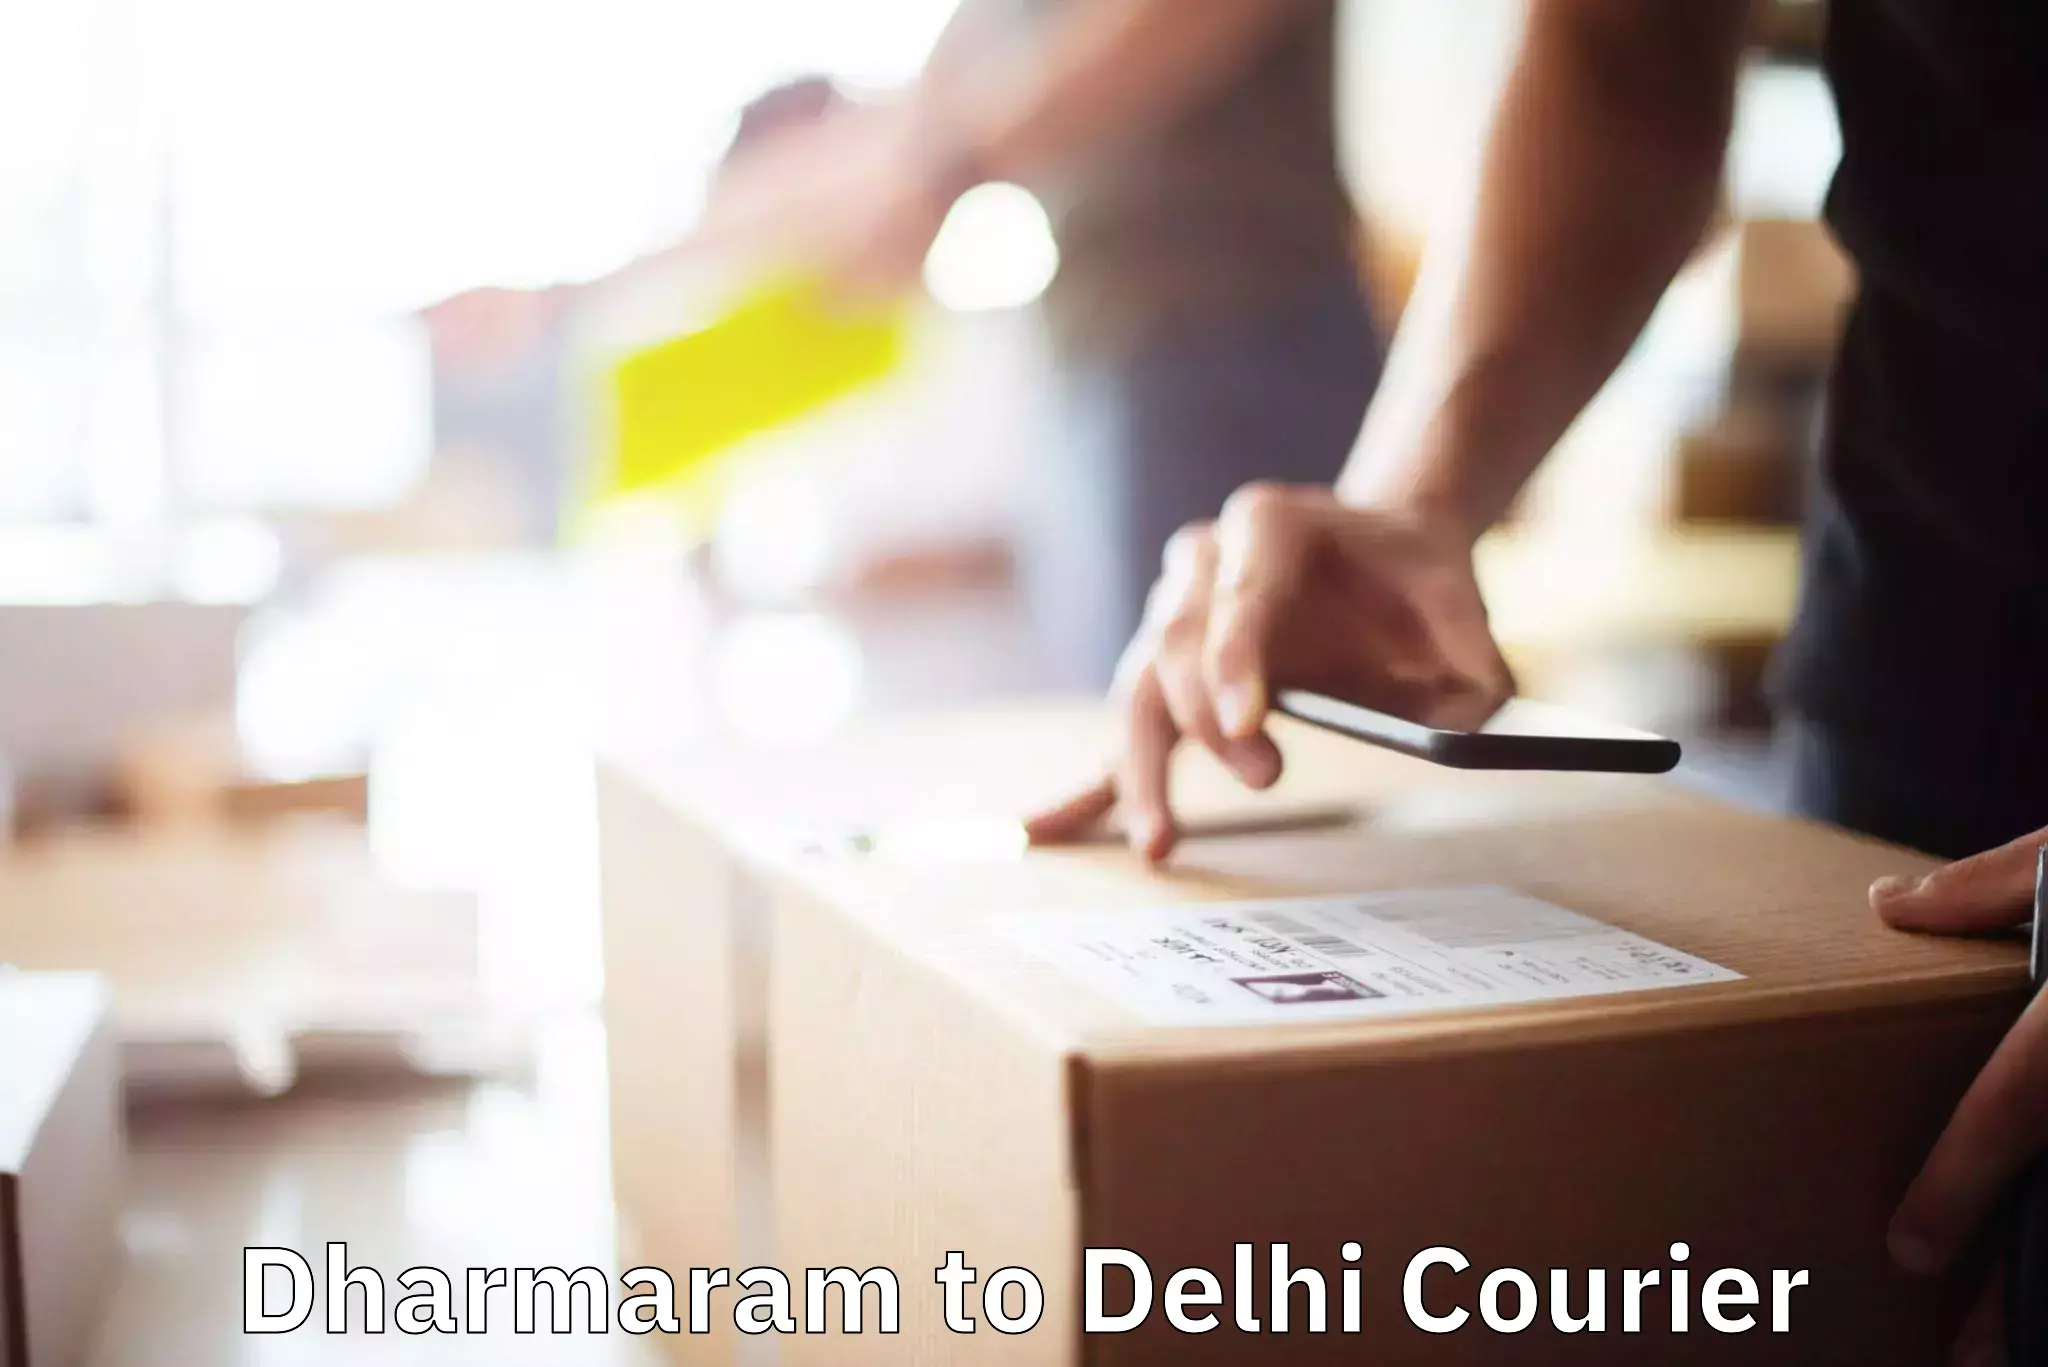 Efficient moving company Dharmaram to Delhi